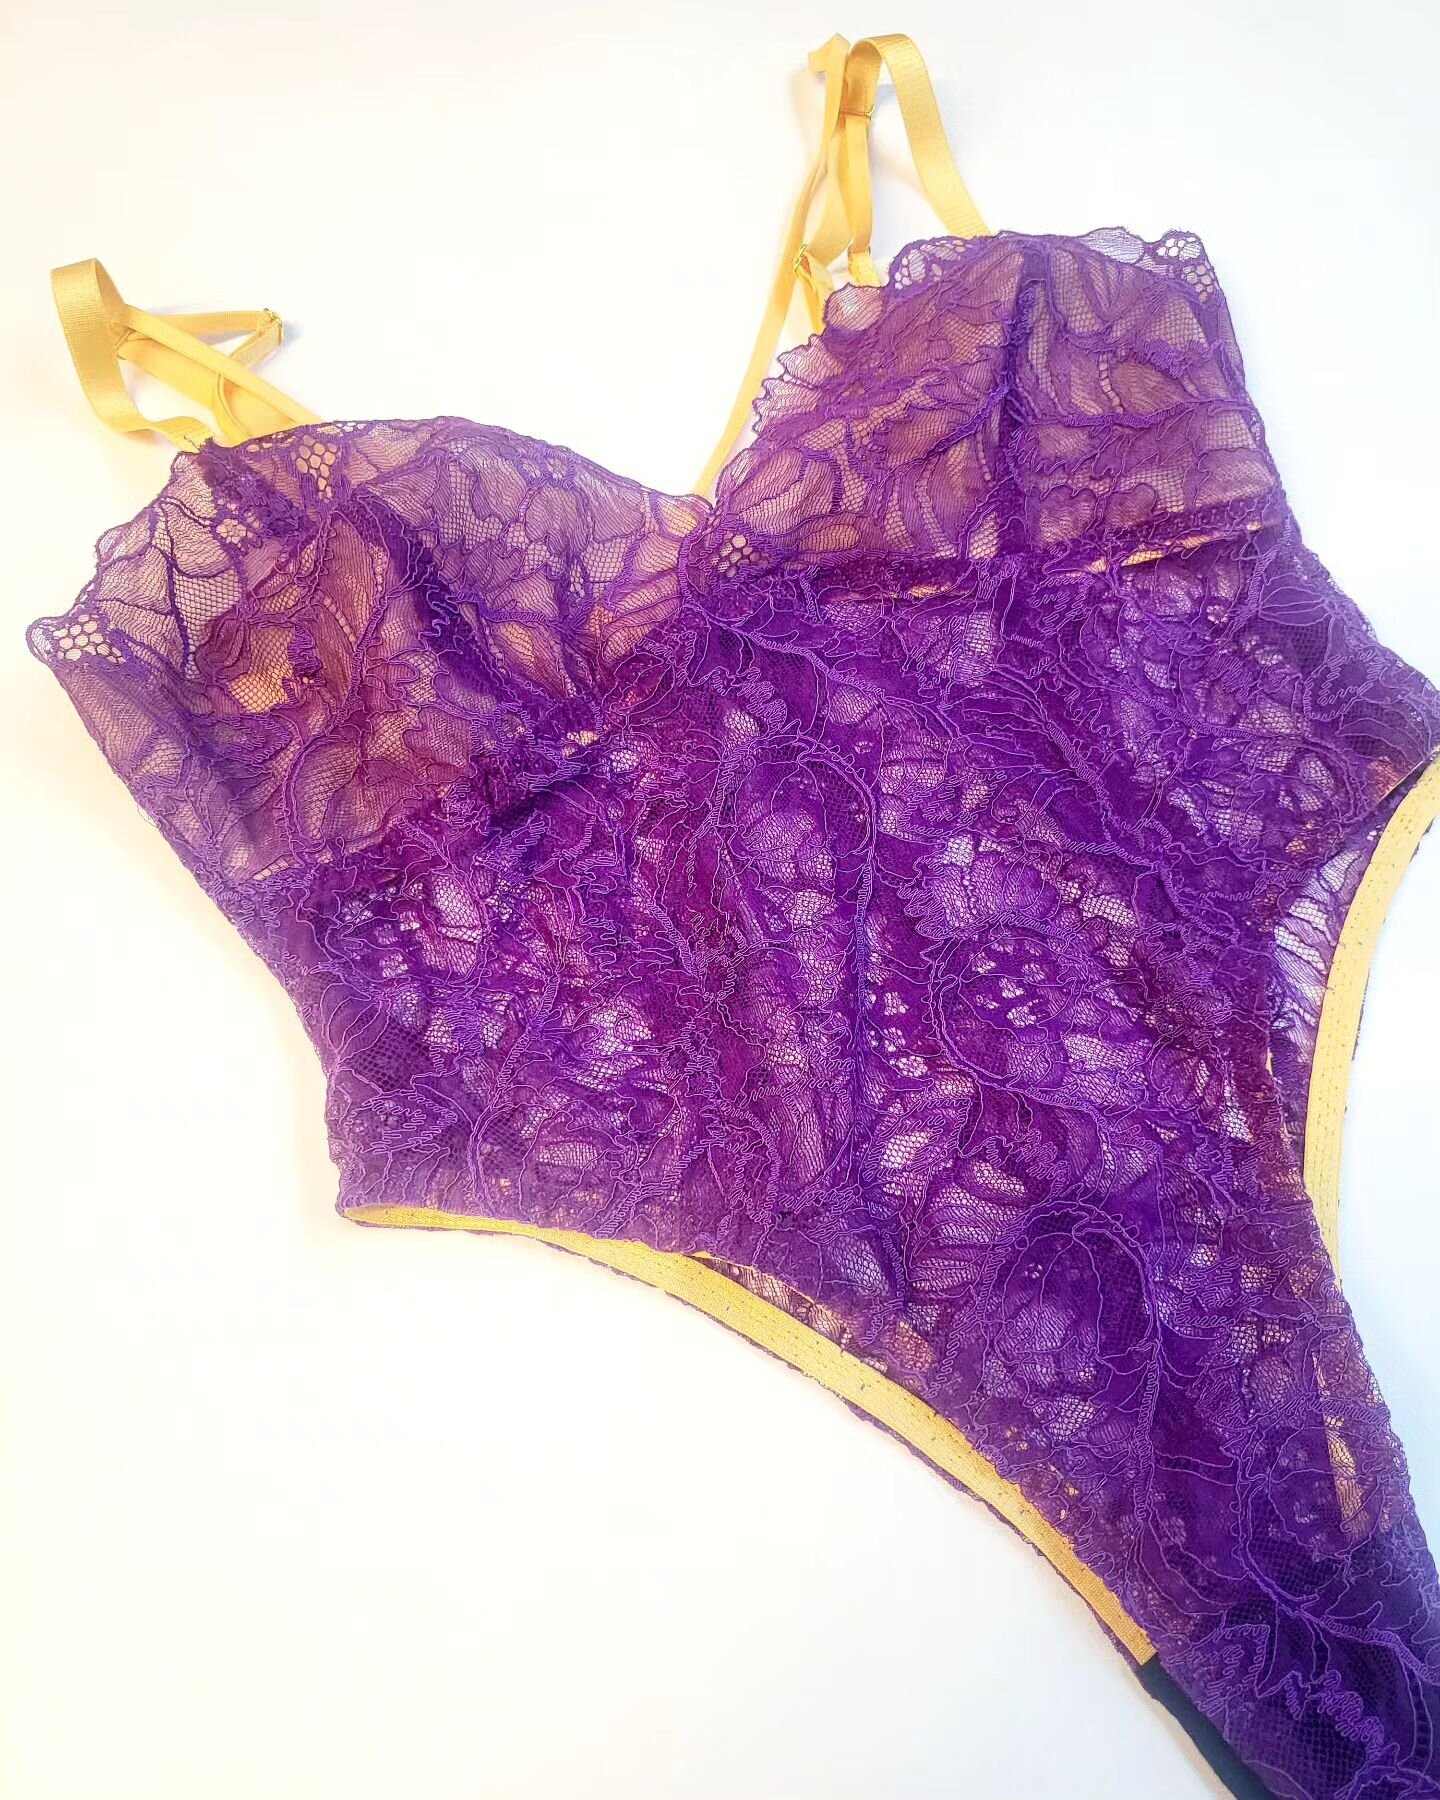 Purple. It's a vibe.

#purple